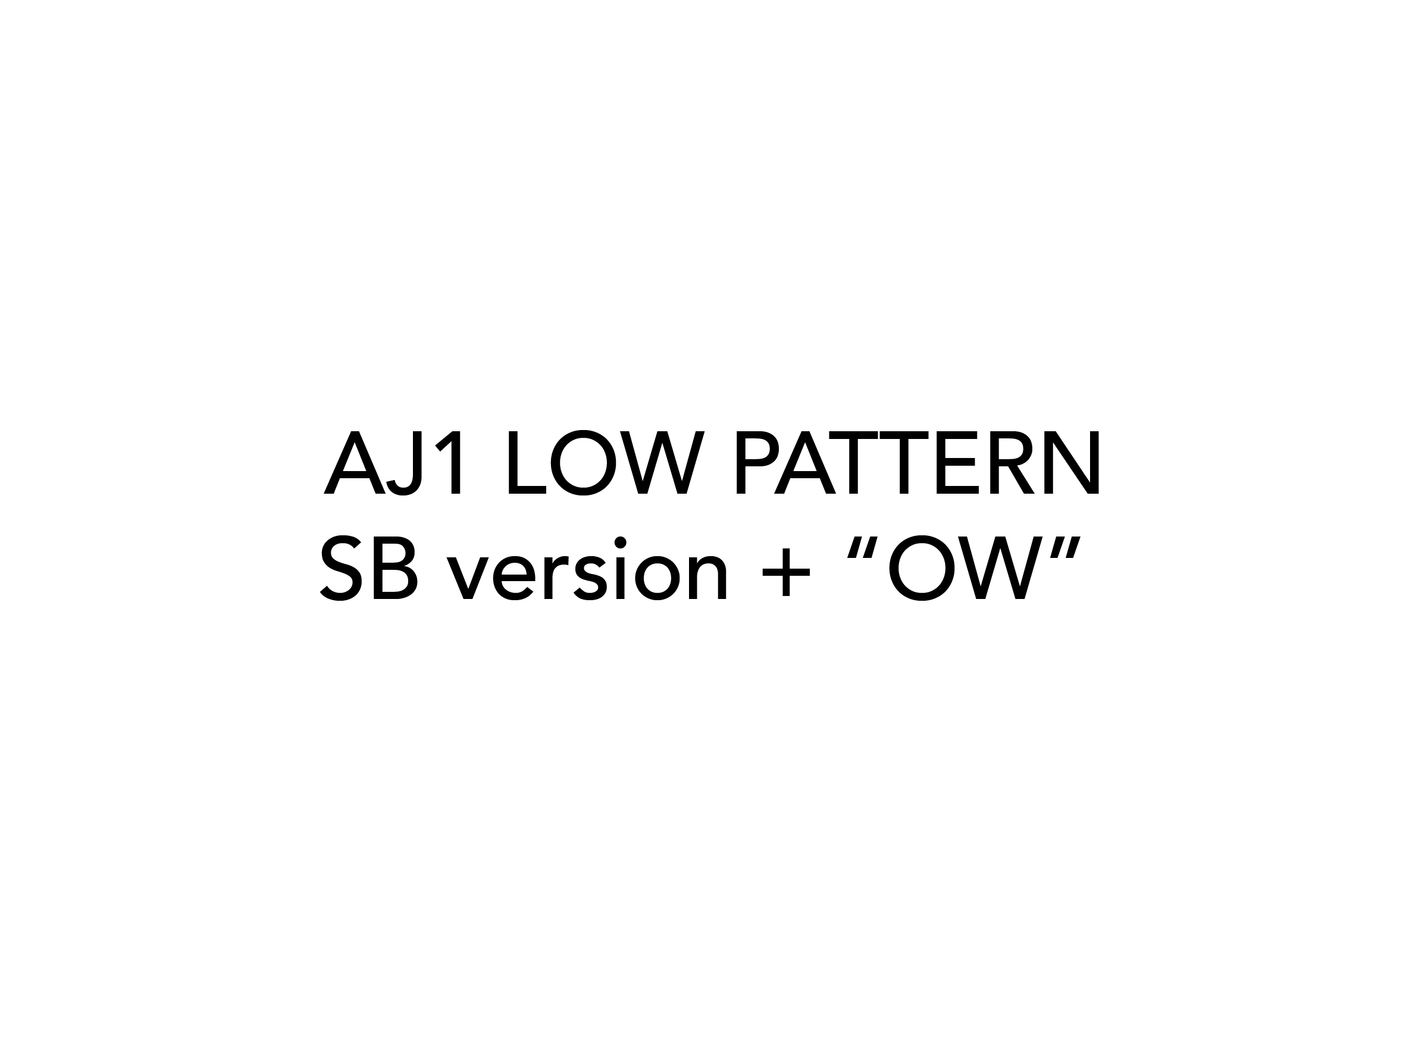 AJ1 LOW (SB) + "OW" LOW Pattern